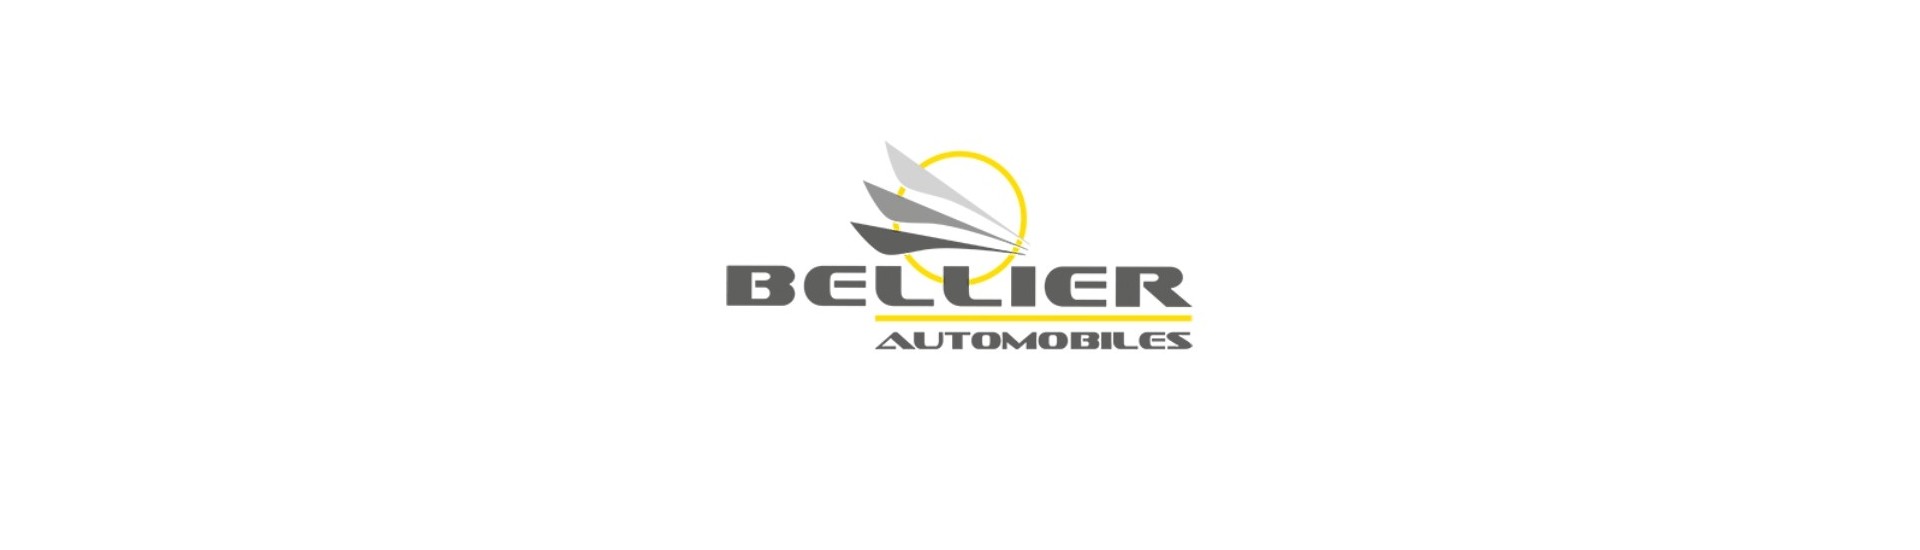 Parhaan auton hinta ilman lupaa Bellier